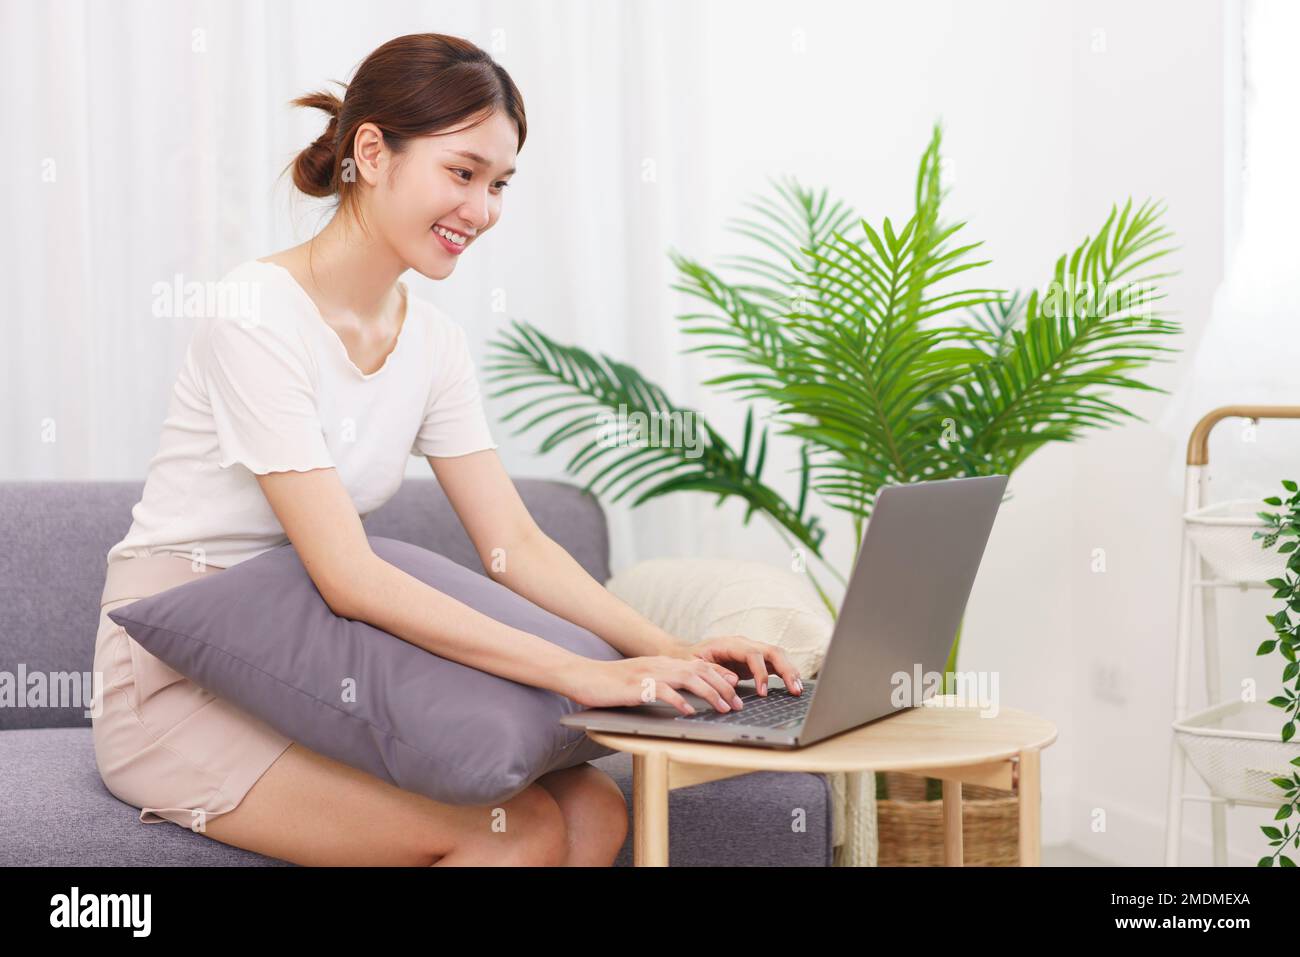 Estilo de vida en el concepto de sala de estar, mujer joven asiática sentada en el sofá y escribiendo en el portátil. Foto de stock